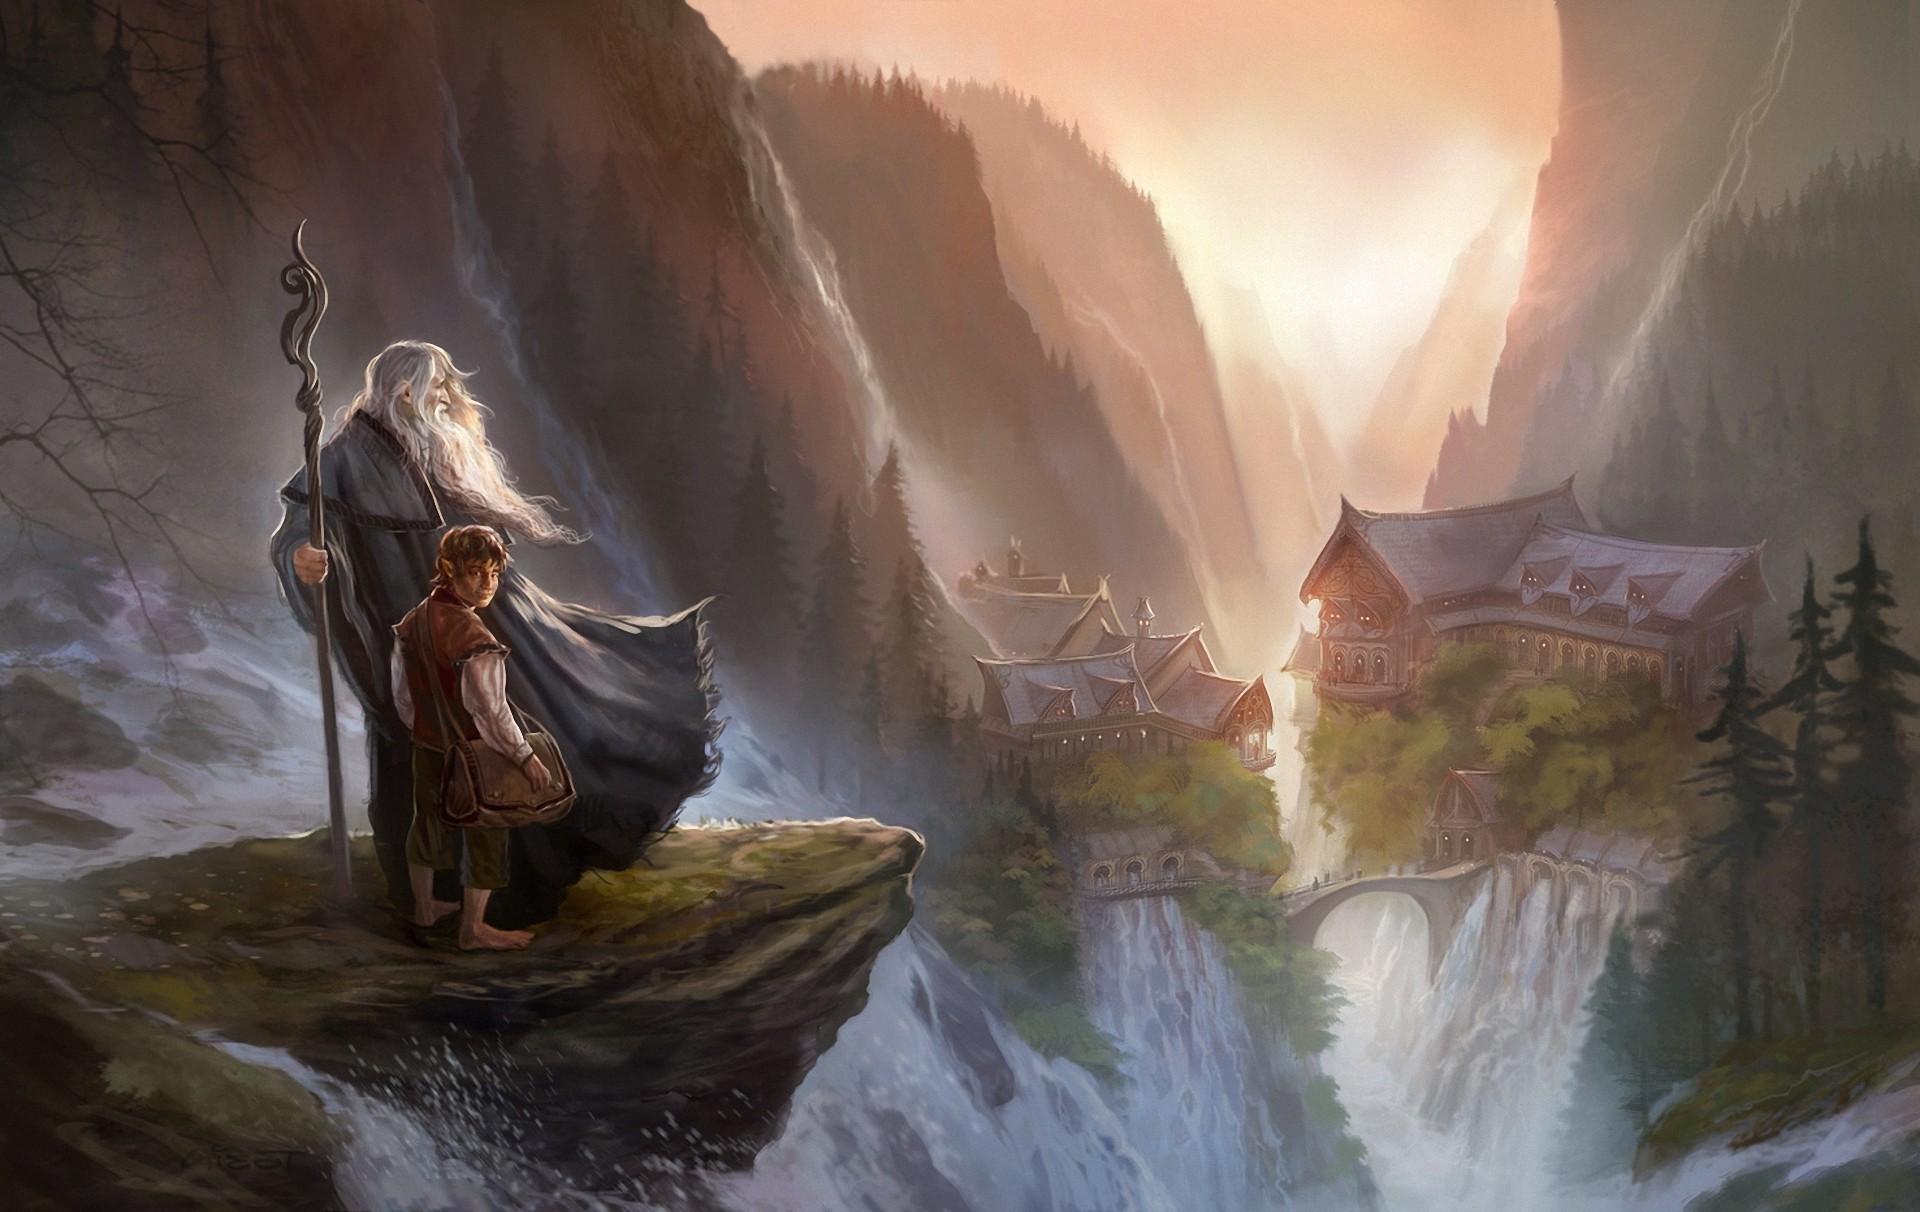 il desktop del signore degli anelli,cg artwork,mitologia,personaggio fittizio,gioco di avventura e azione,illustrazione